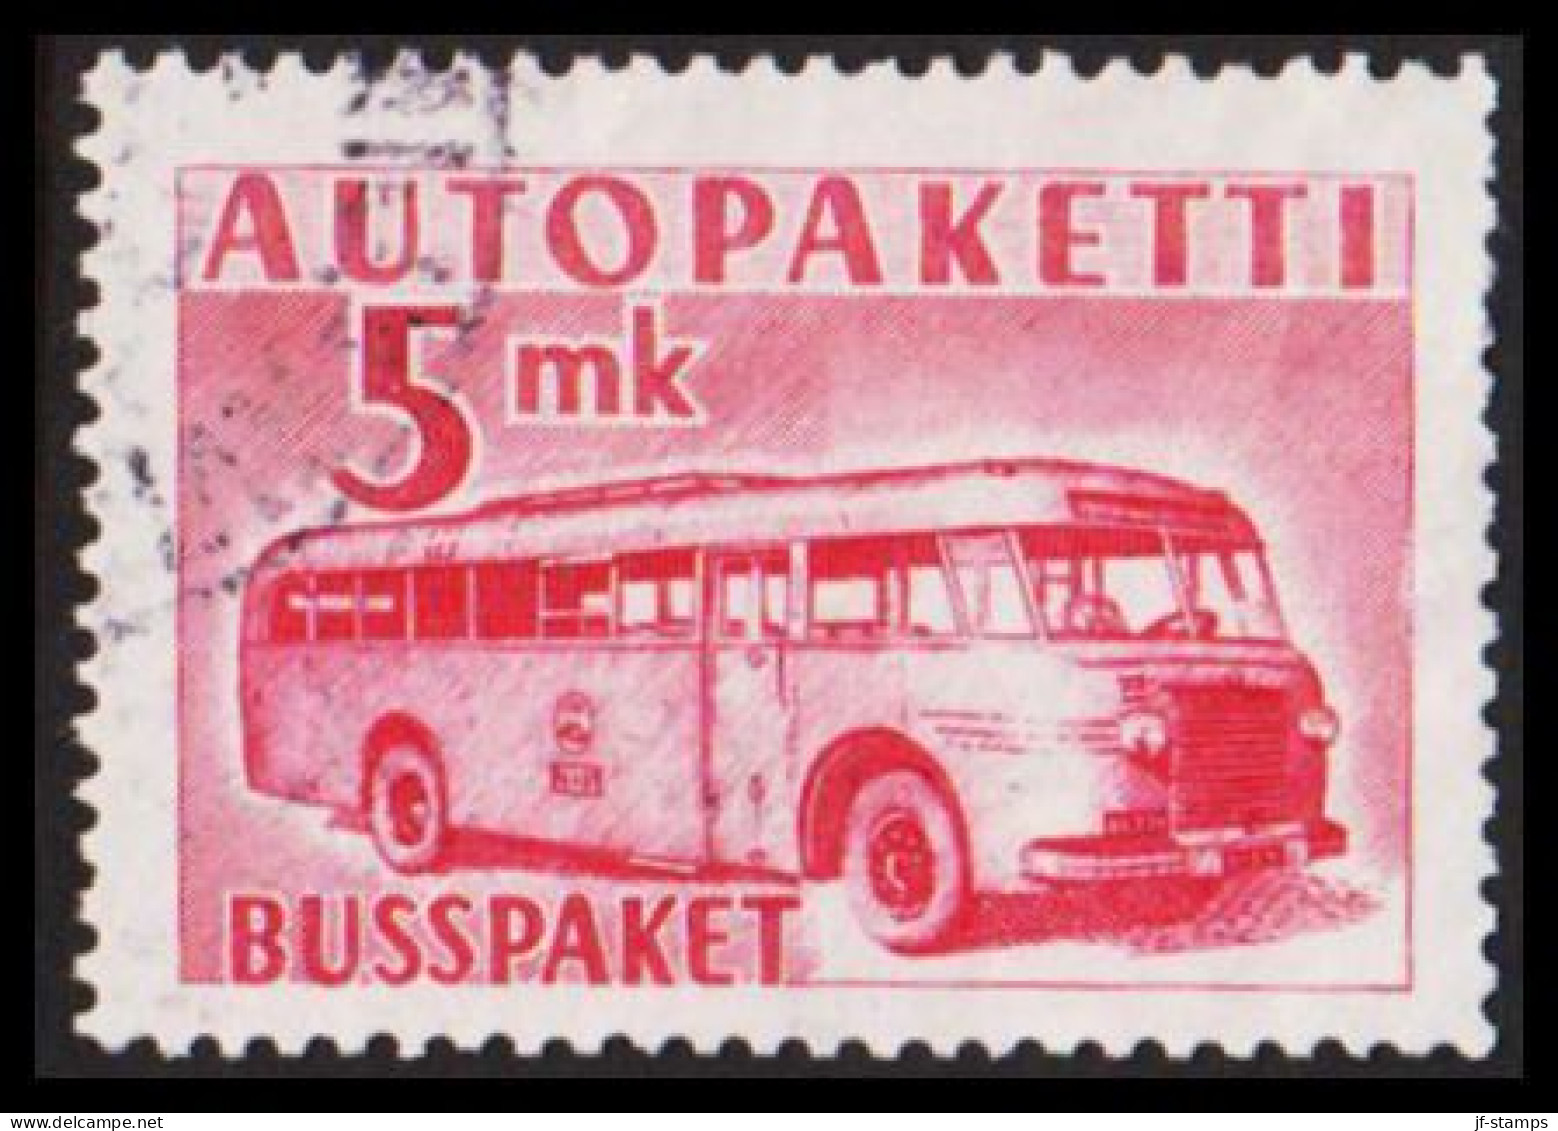 1952-1958. FINLAND. Mail Bus. 5 Mk. AUTOPAKETTI - BUSSPAKET  (Michel AP 6) - JF534378 - Postbuspakete